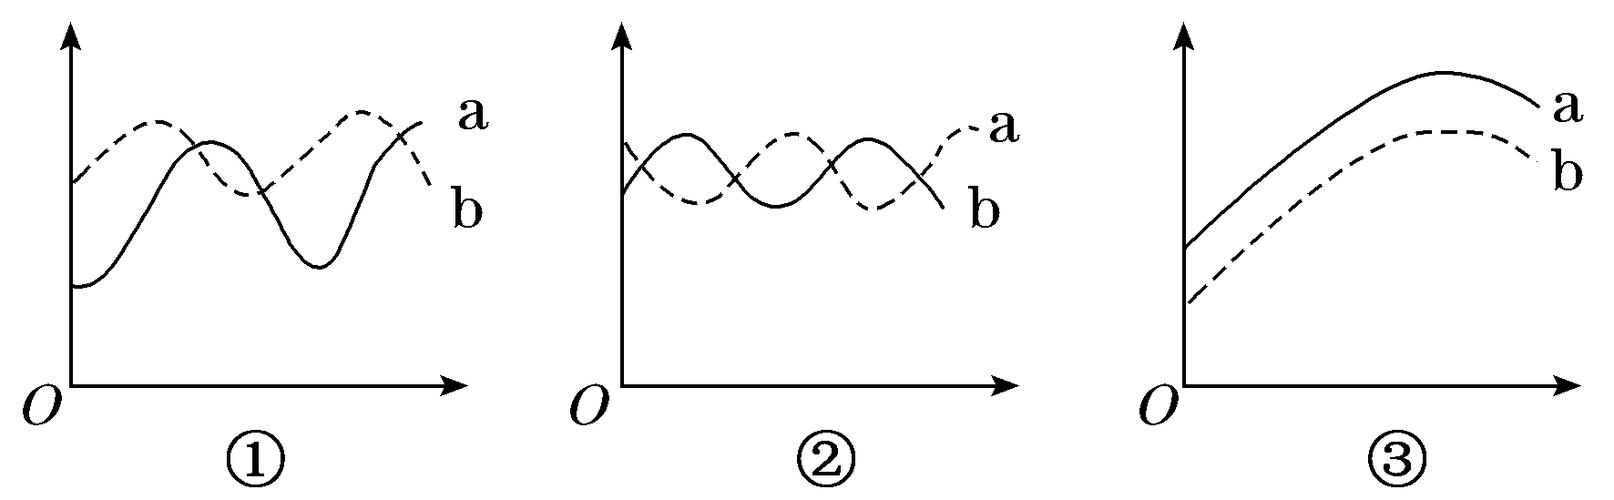 狐与兔的种间关系示意图(纵轴表示个体数,横轴表示时间),请据图回答